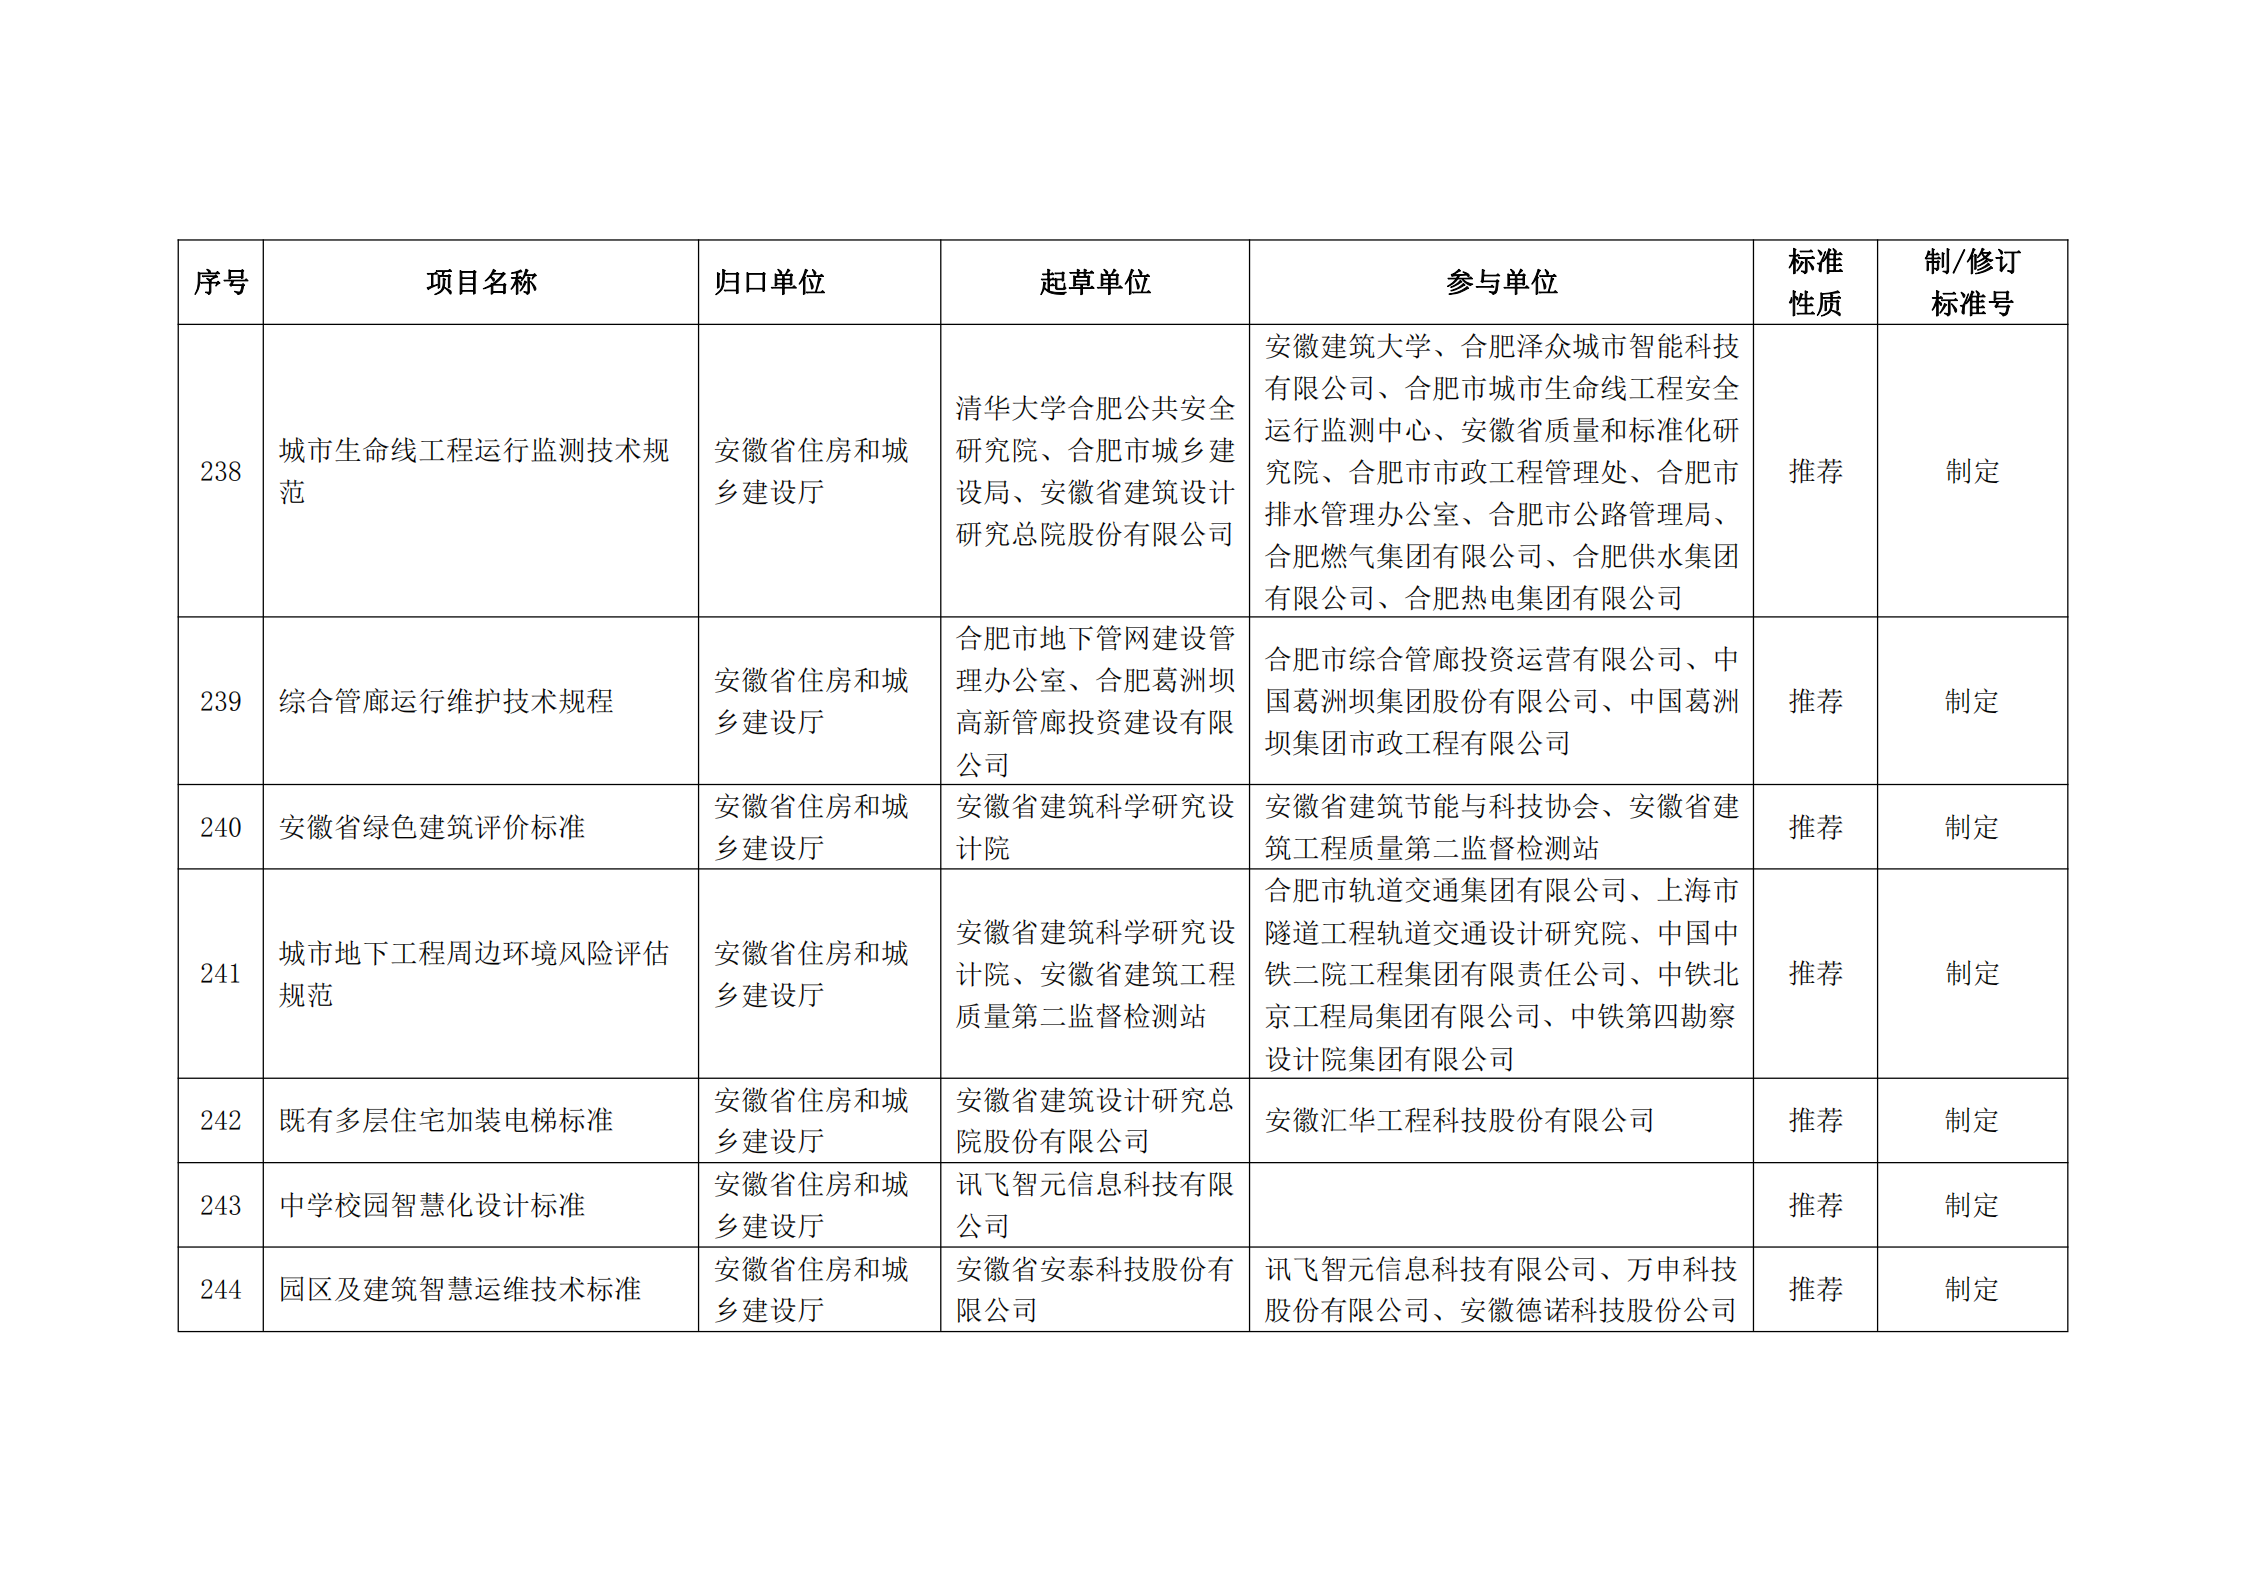 2020 年第二批安徽省地方标准制、修订计划项目汇总表(图27)